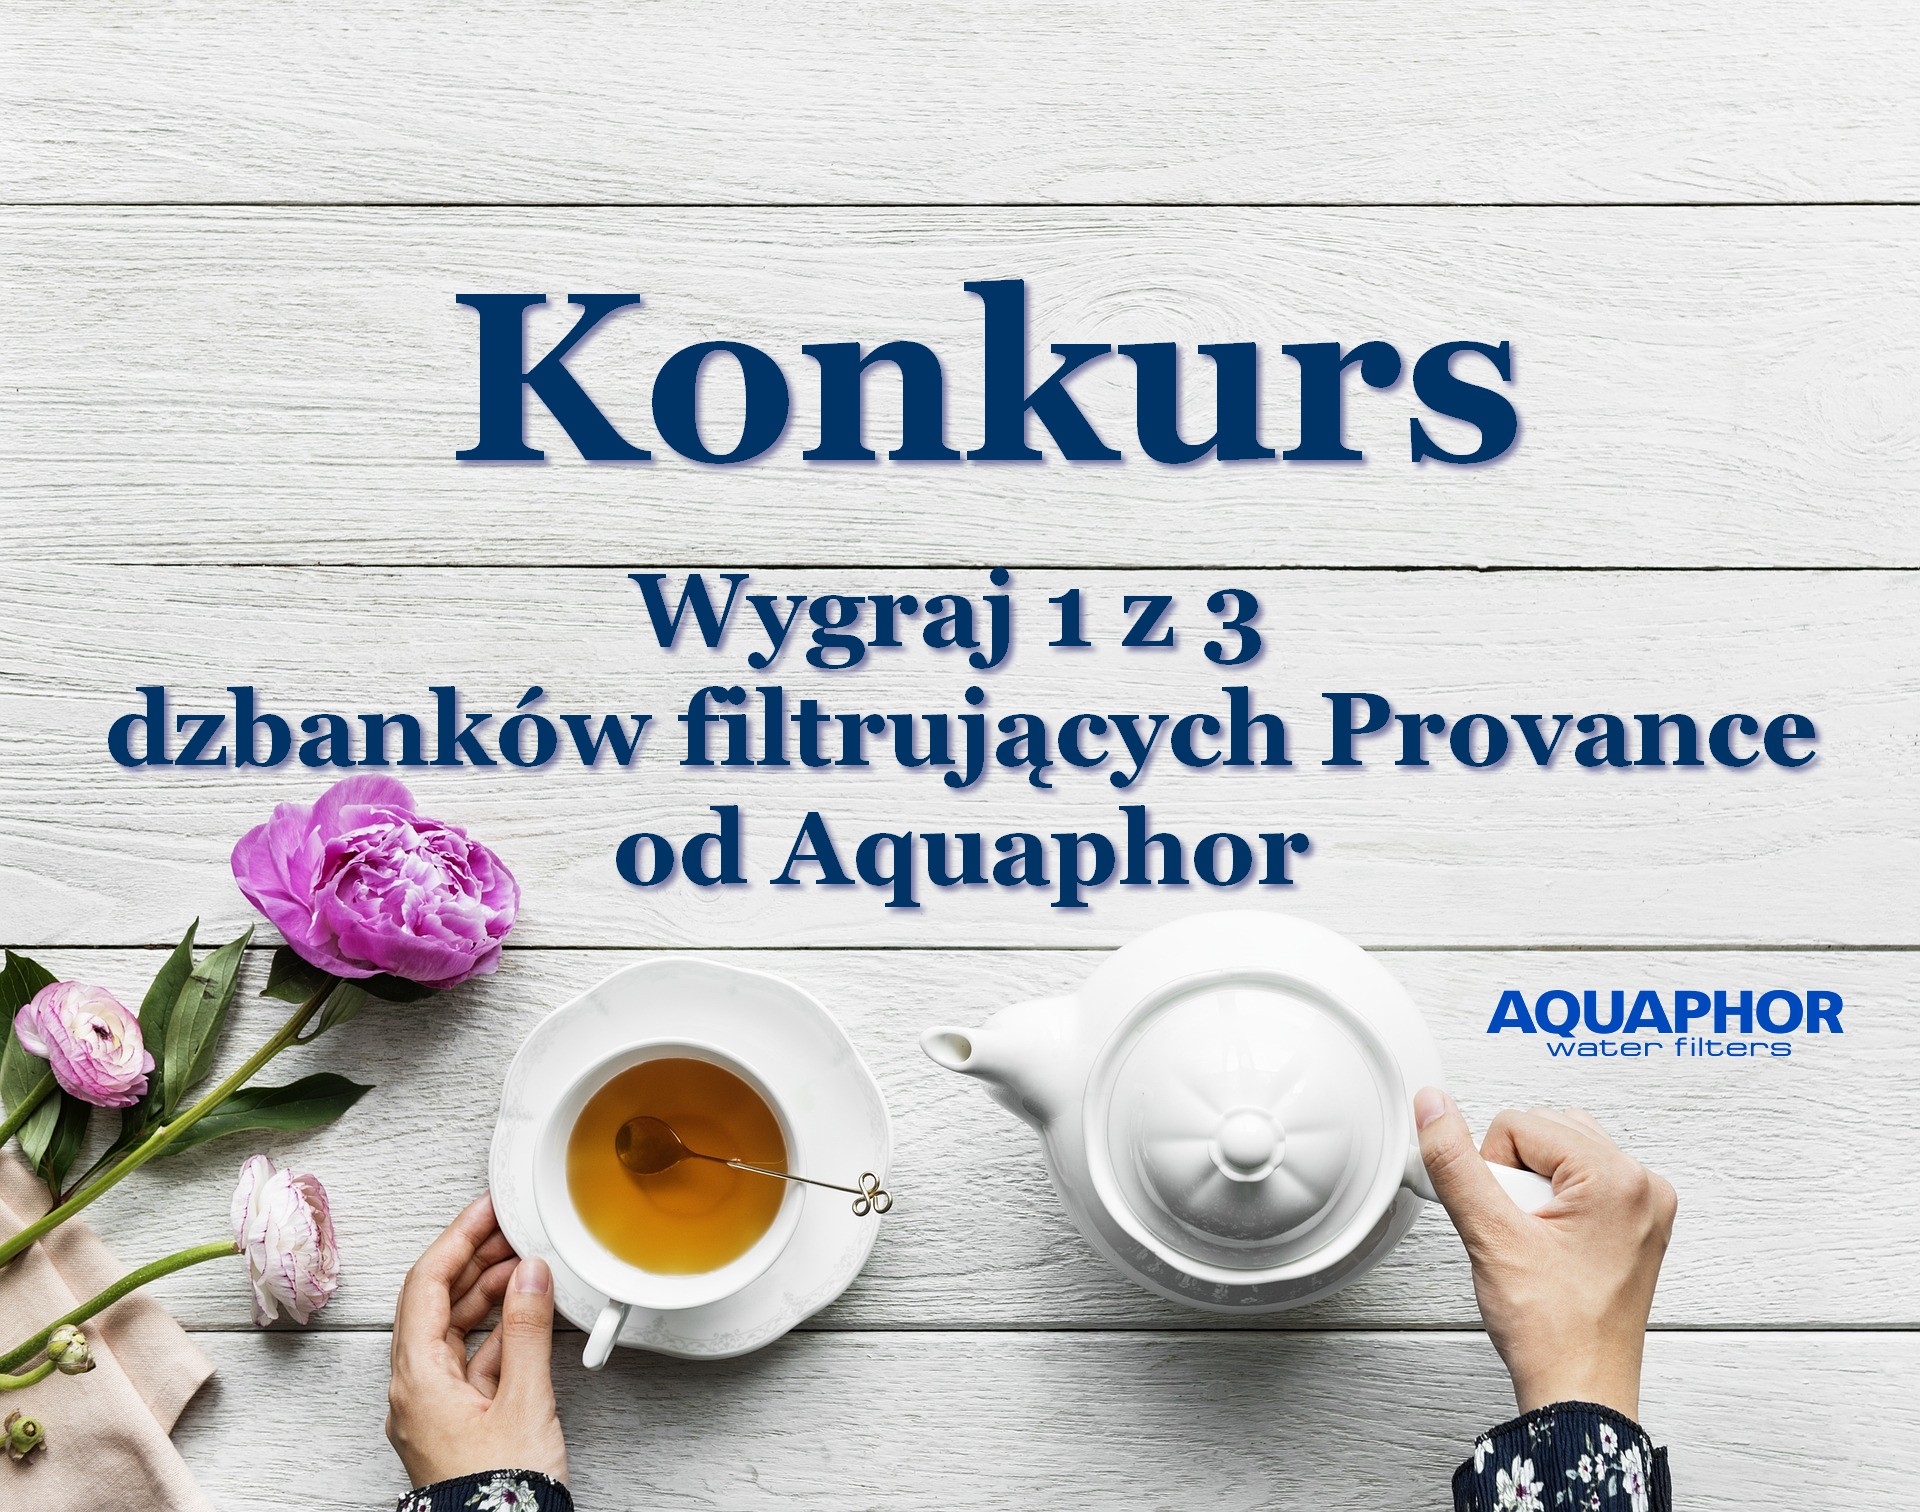 Konkurs z Aquaphor Wygraj 1 z 3 dzbanków filtrujących Provance Aquaphor